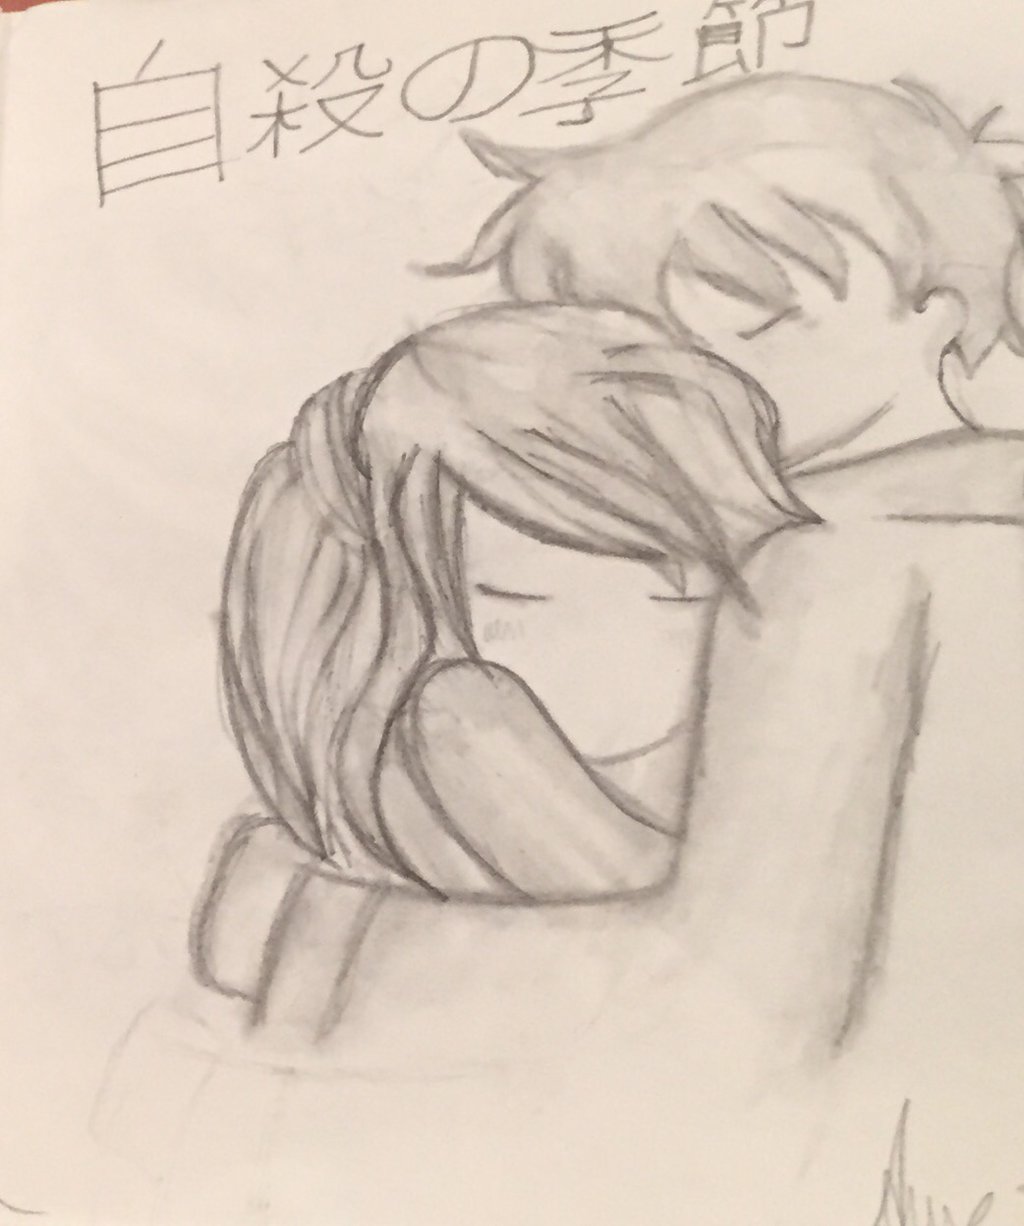 Chibi Anime Boy And Girl Hugging Anime Wallpapers